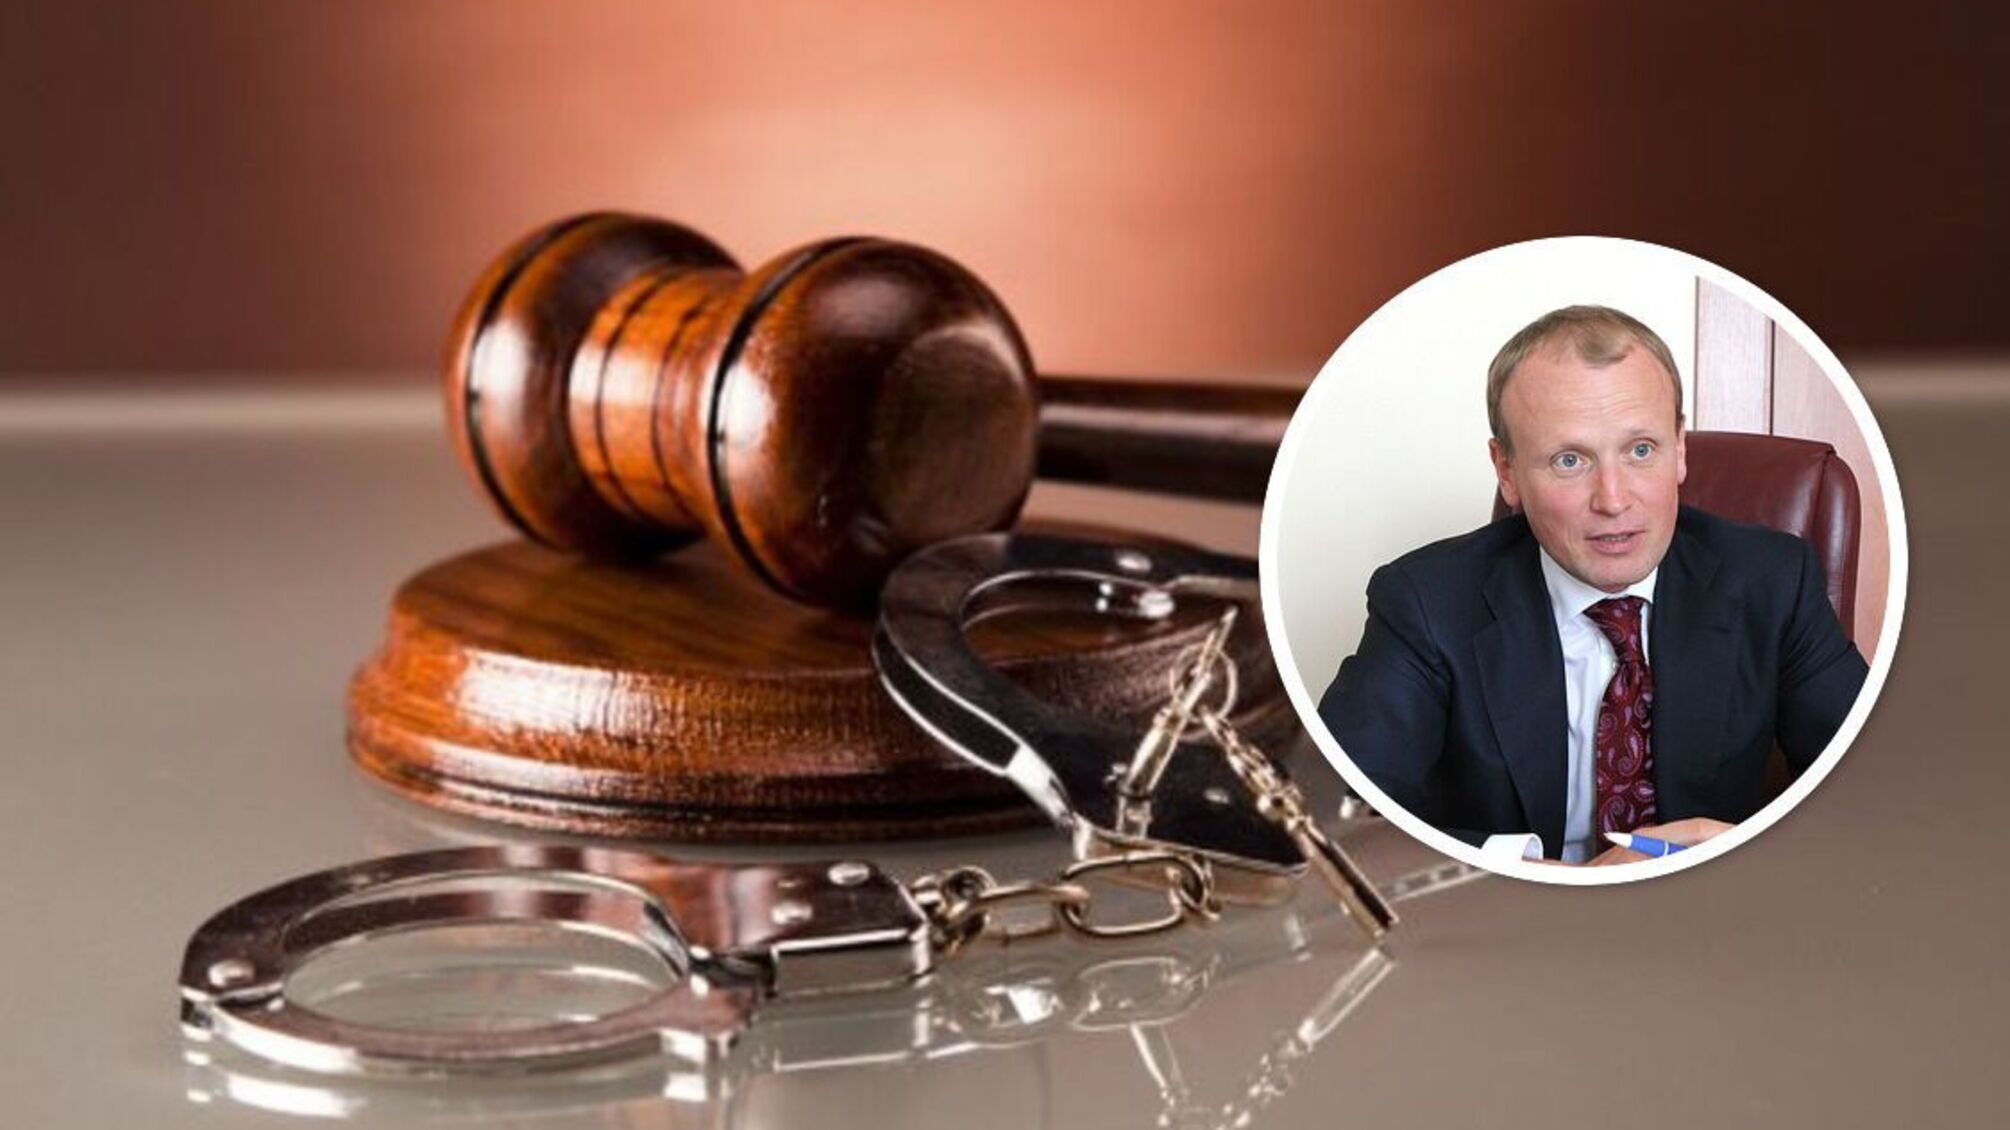 Как пророссийский банкир Омельяненко ушел от правосудия за присвоение бюджетных средств?